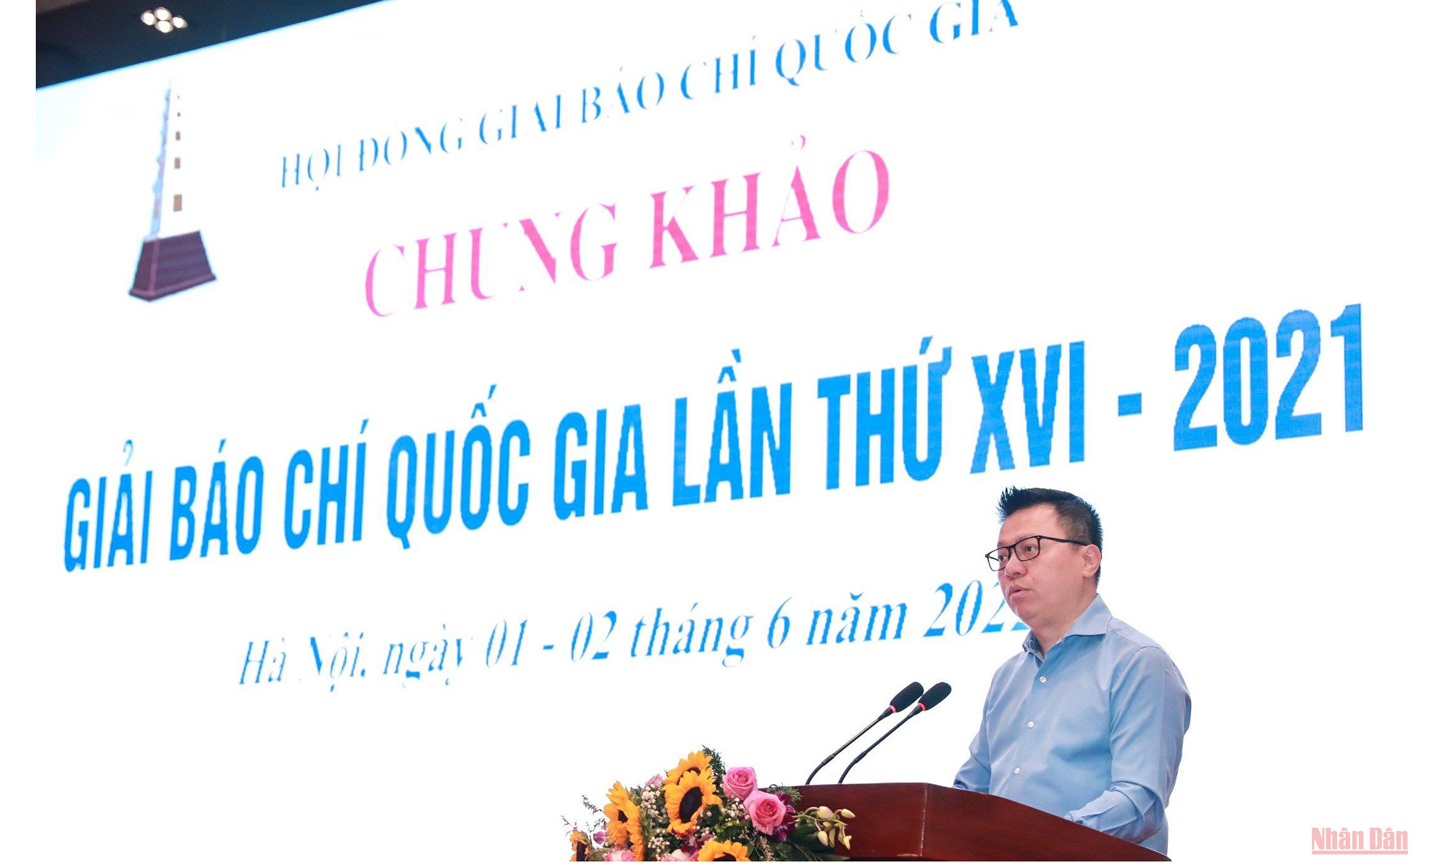 Đồng chí Lê Quốc Minh phát biểu khai mạc Vòng chung khảo Giải Báo chí quốc gia lần thứ XVI - năm 2021. (Ảnh: THÀNH ĐẠT)